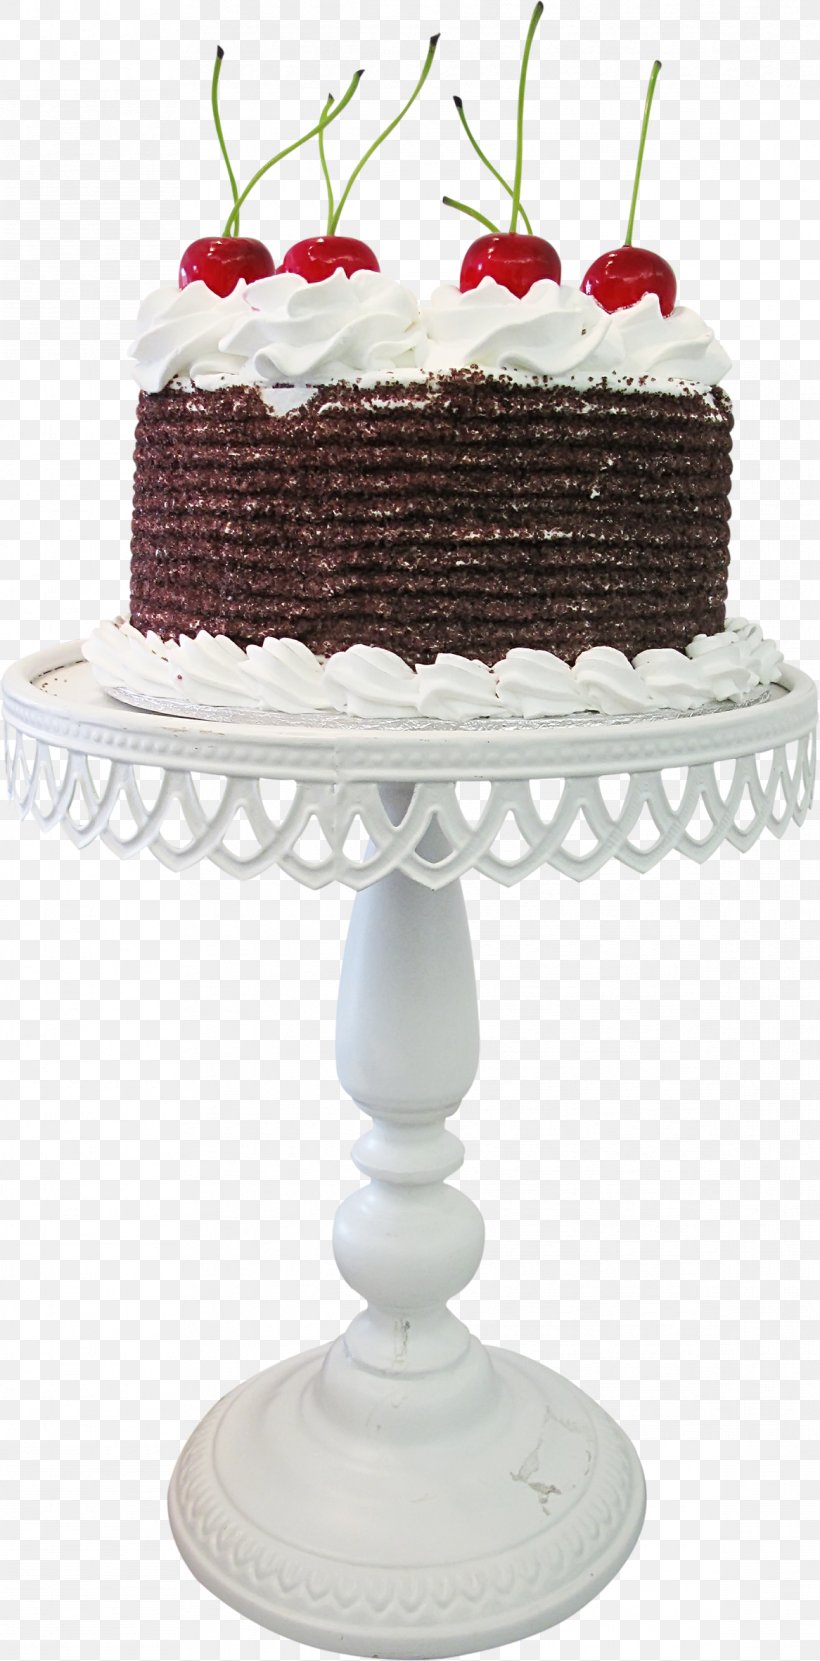 Buttercream Sugar cake Cake decorating Royal icing Birthday cake, cake,  purple, cake Decorating, sugar Cake png | Klipartz